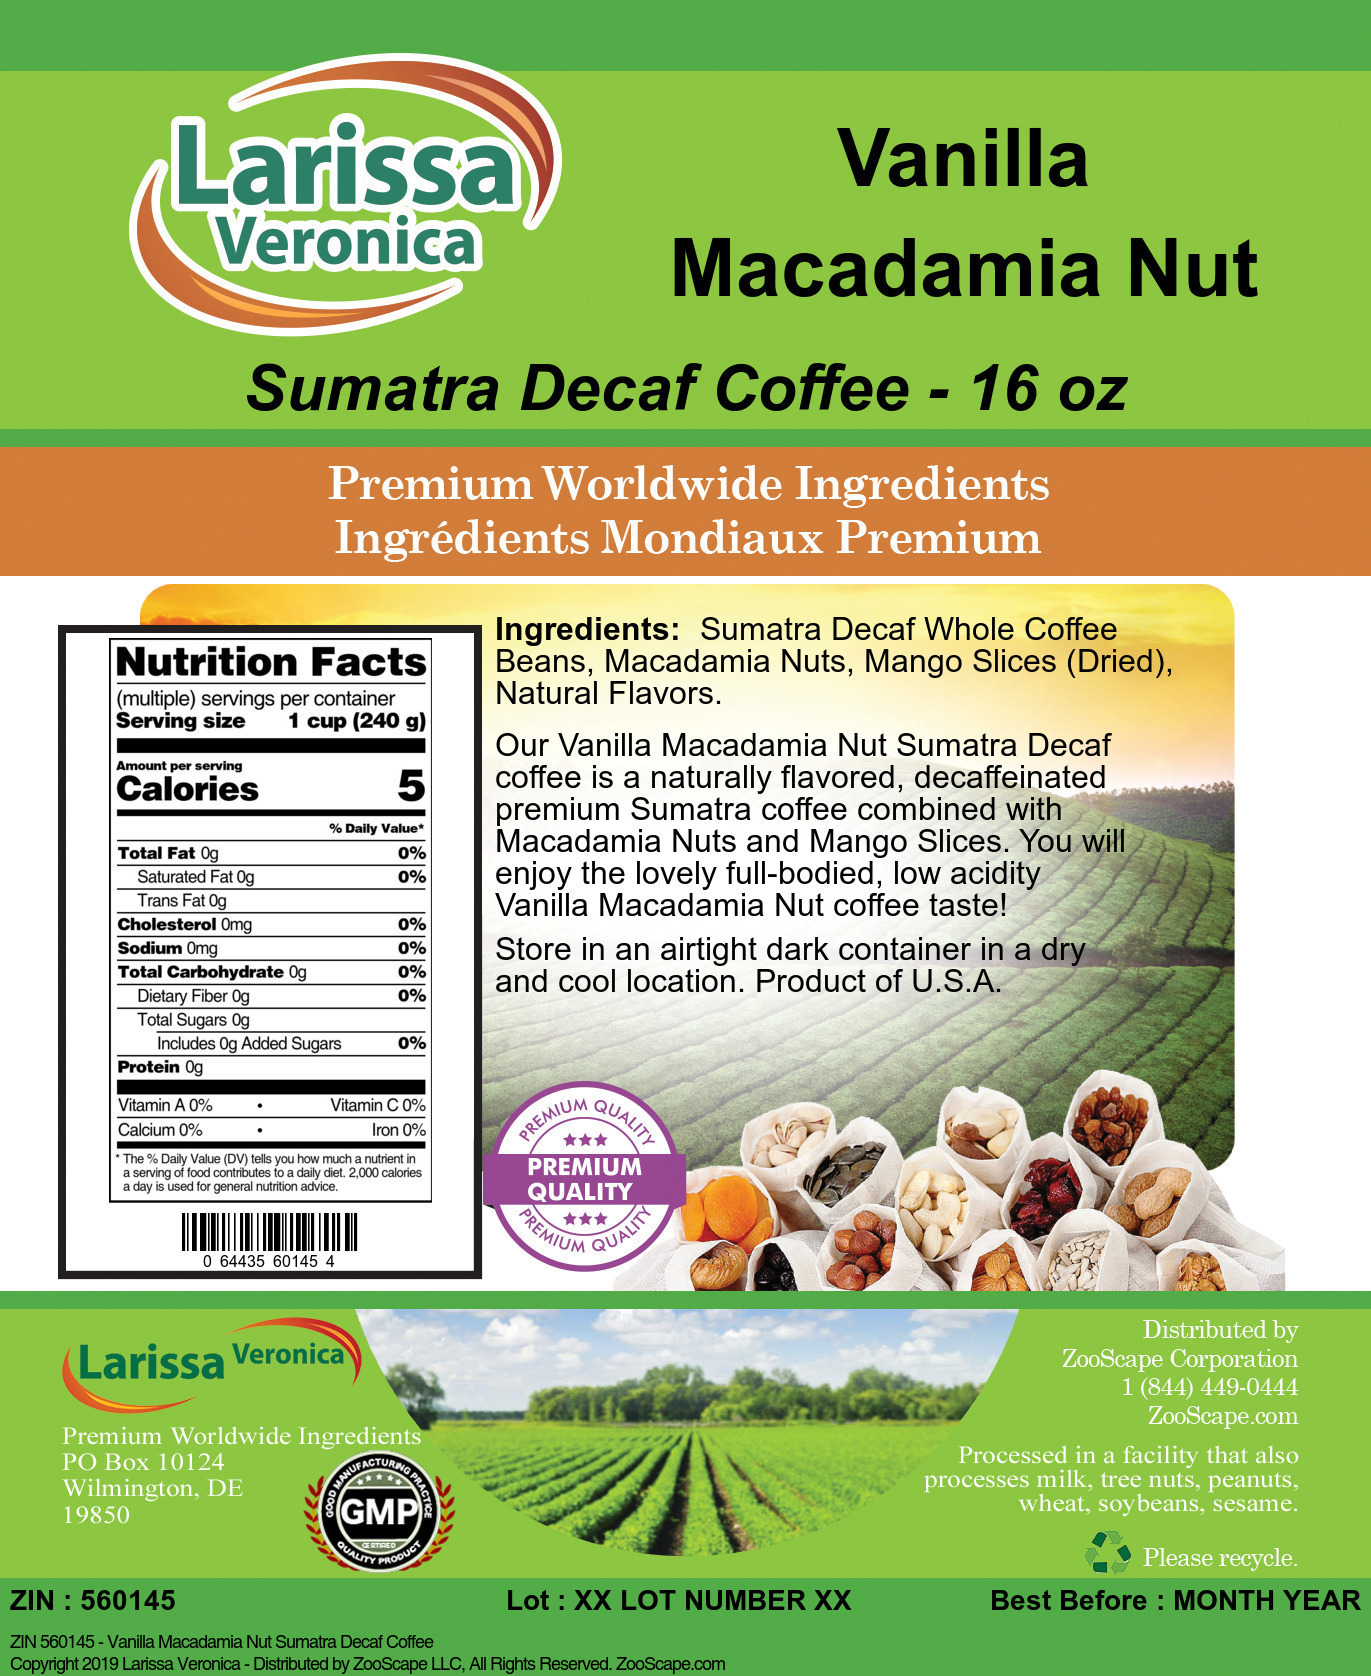 Vanilla Macadamia Nut Sumatra Decaf Coffee - Label